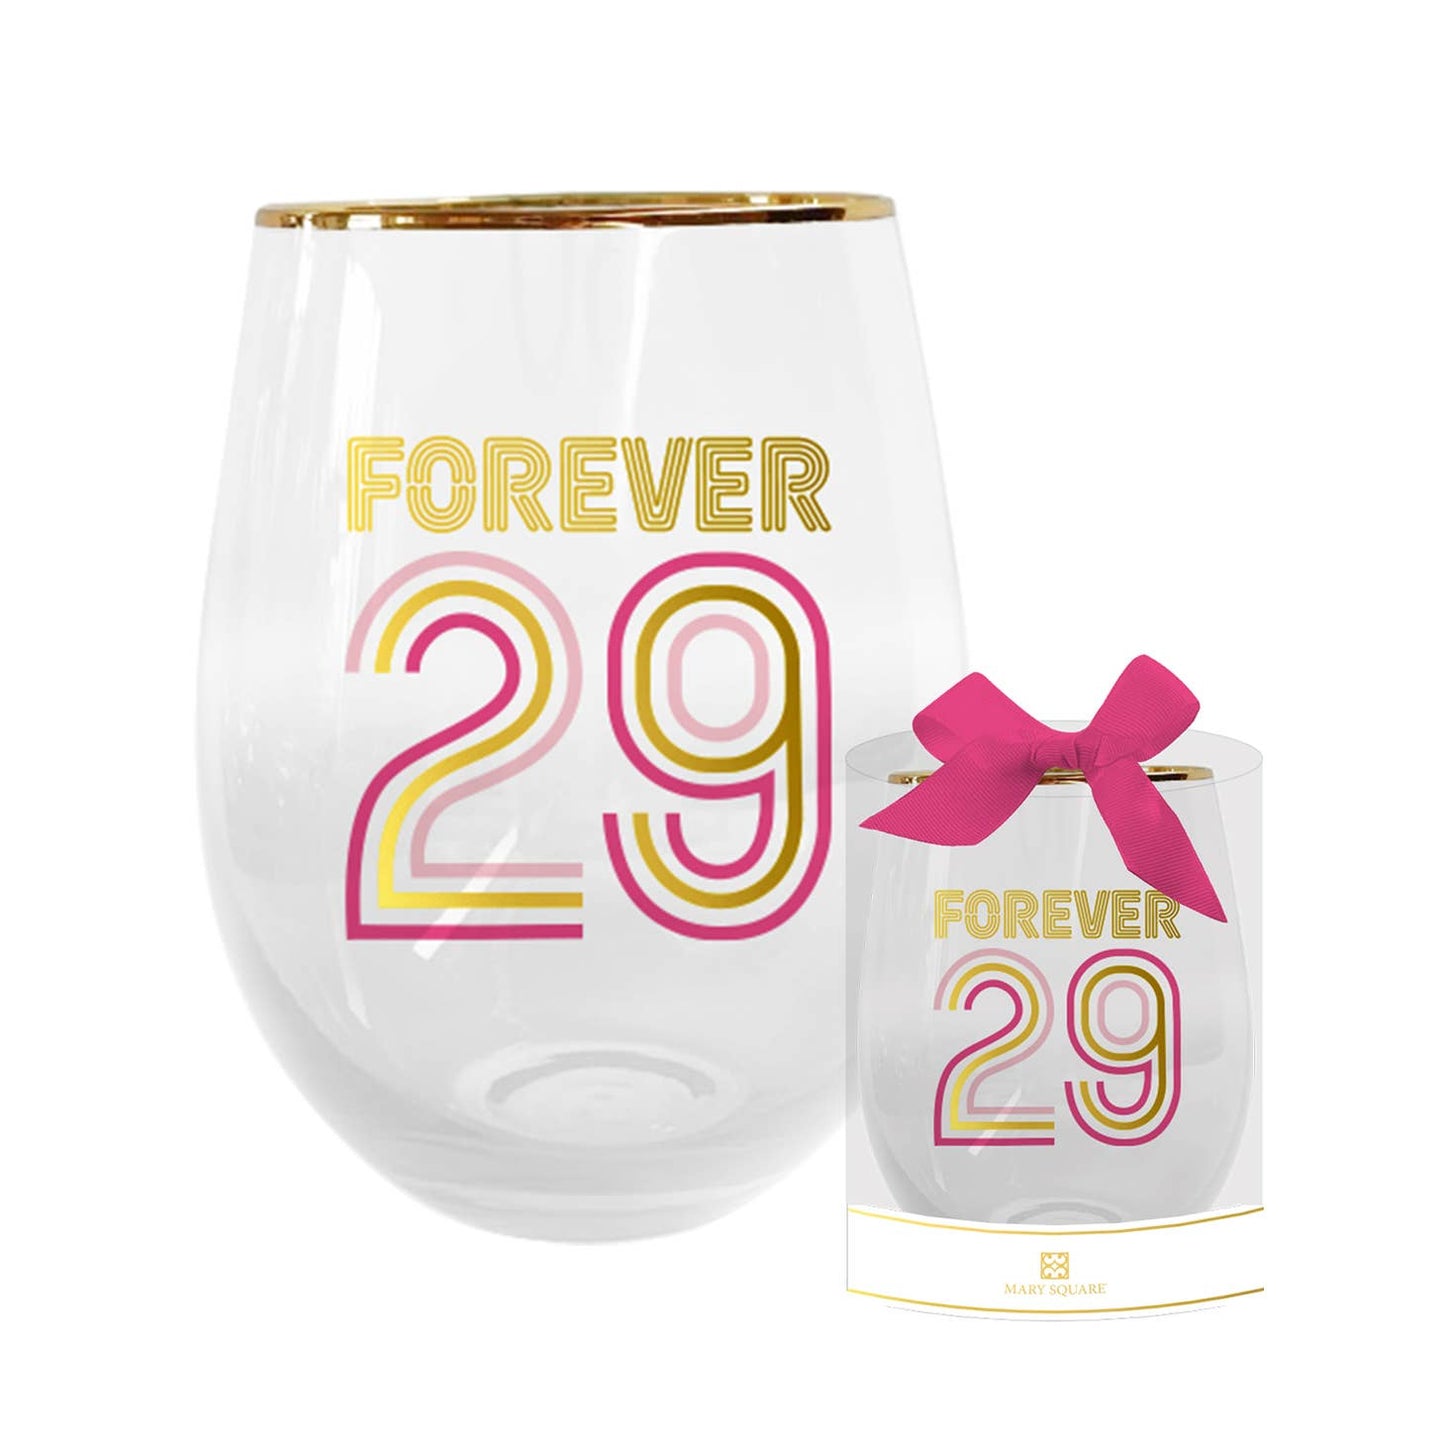 Birthday Milestones Wine Glasses